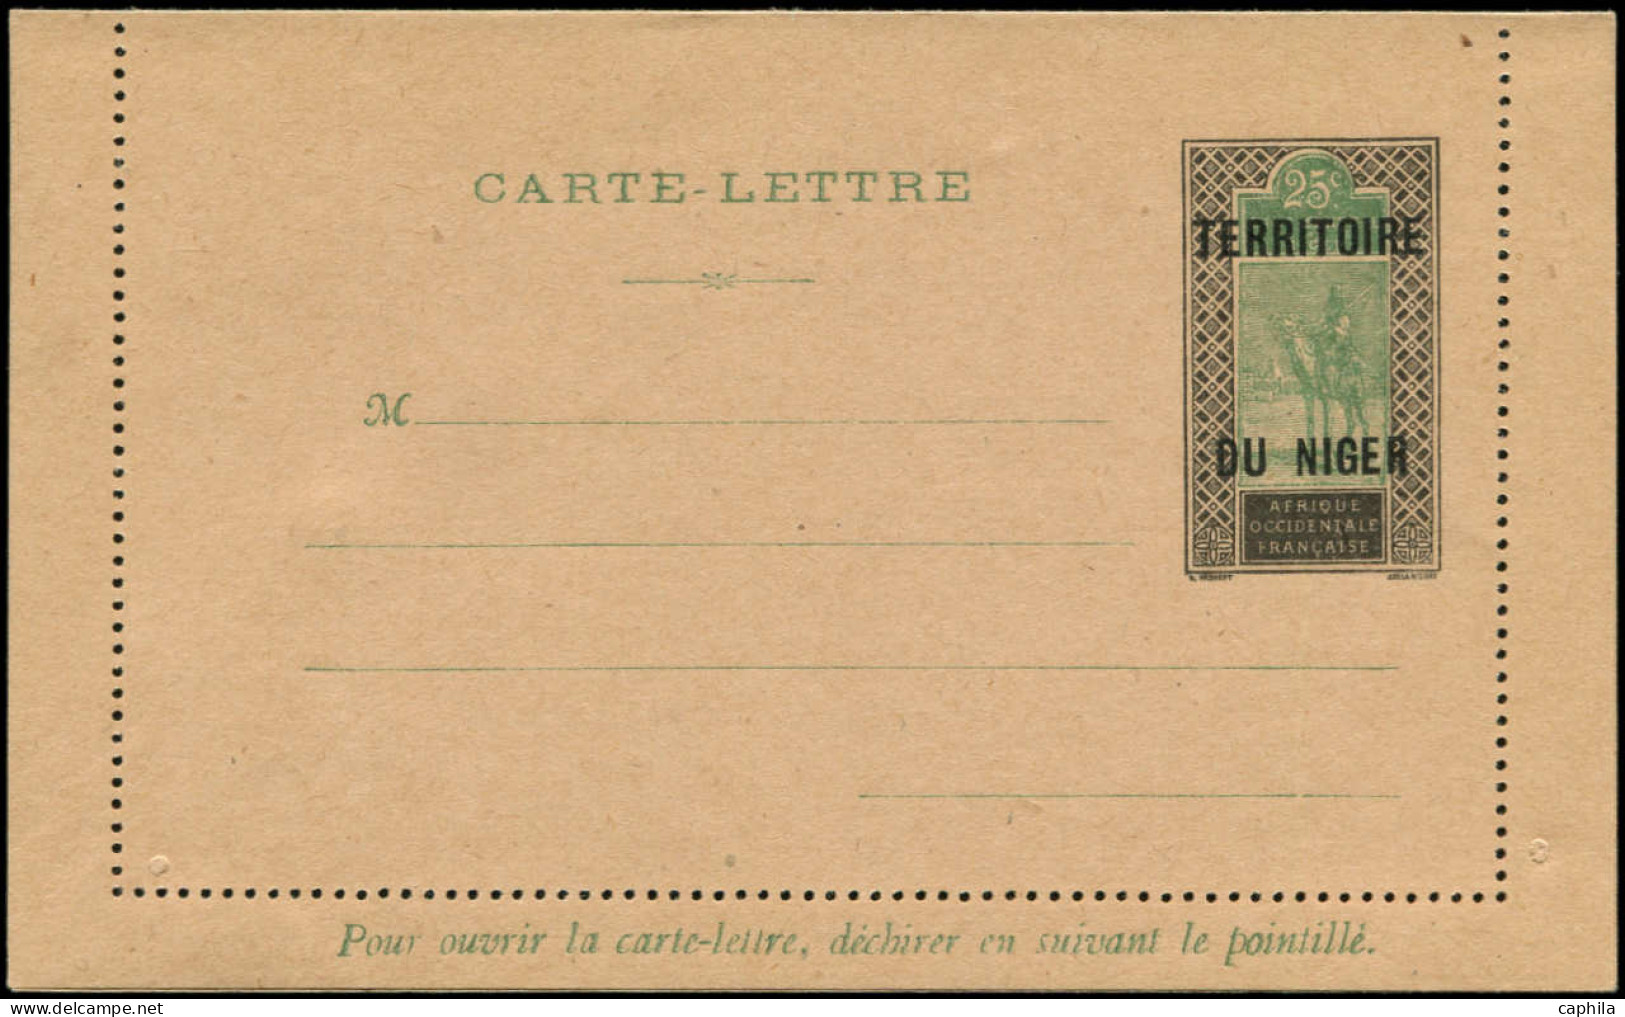 NIGER Entiers Postaux N - CL1a, Carte Lettre Sur Chamois Clair: 25c. Noir Et Vert - Cote: 120 - Ungebraucht